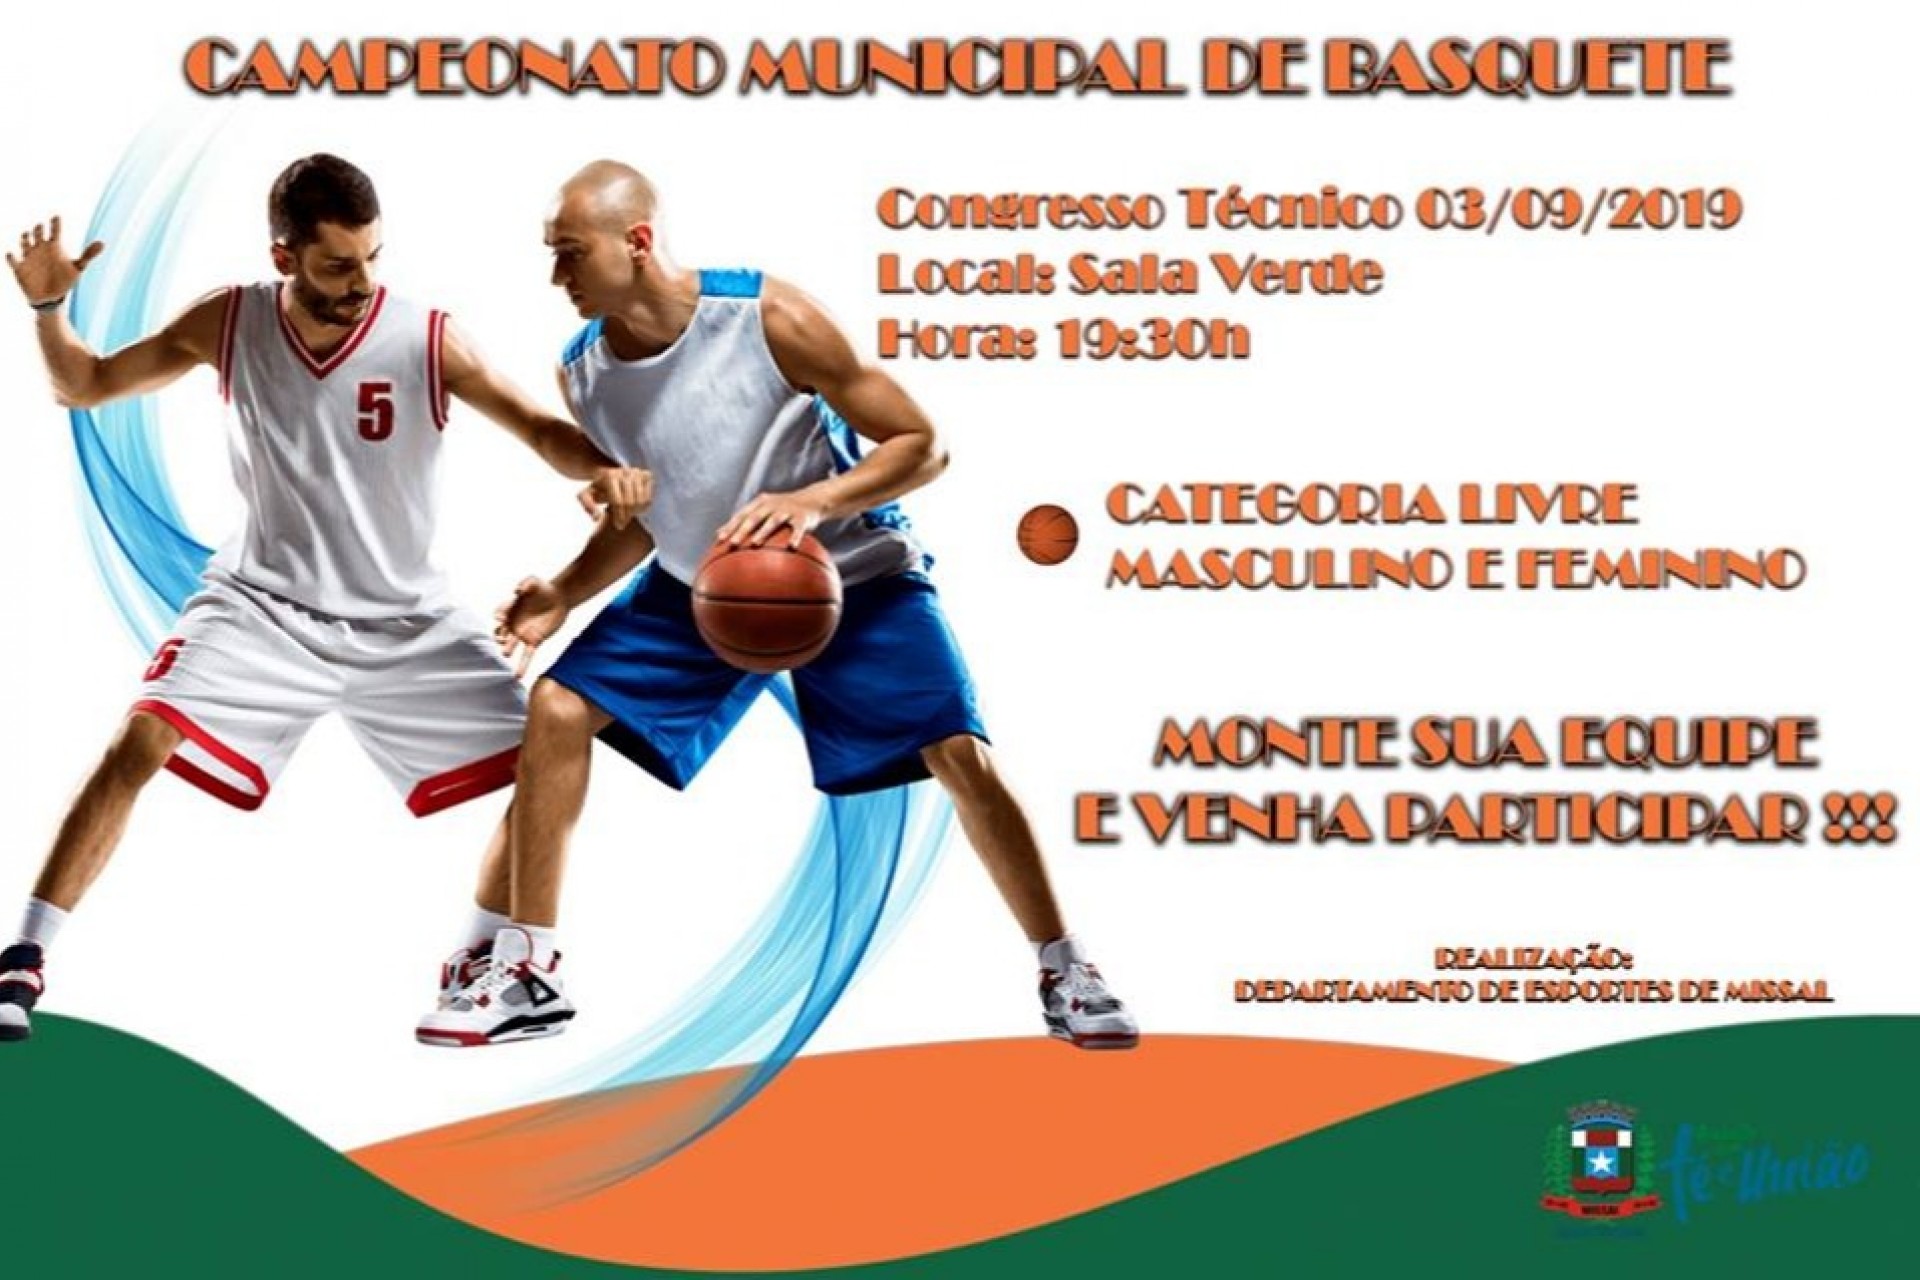 Departamento de Esportes de Missal prepara campeonato municipal de Basquetebol